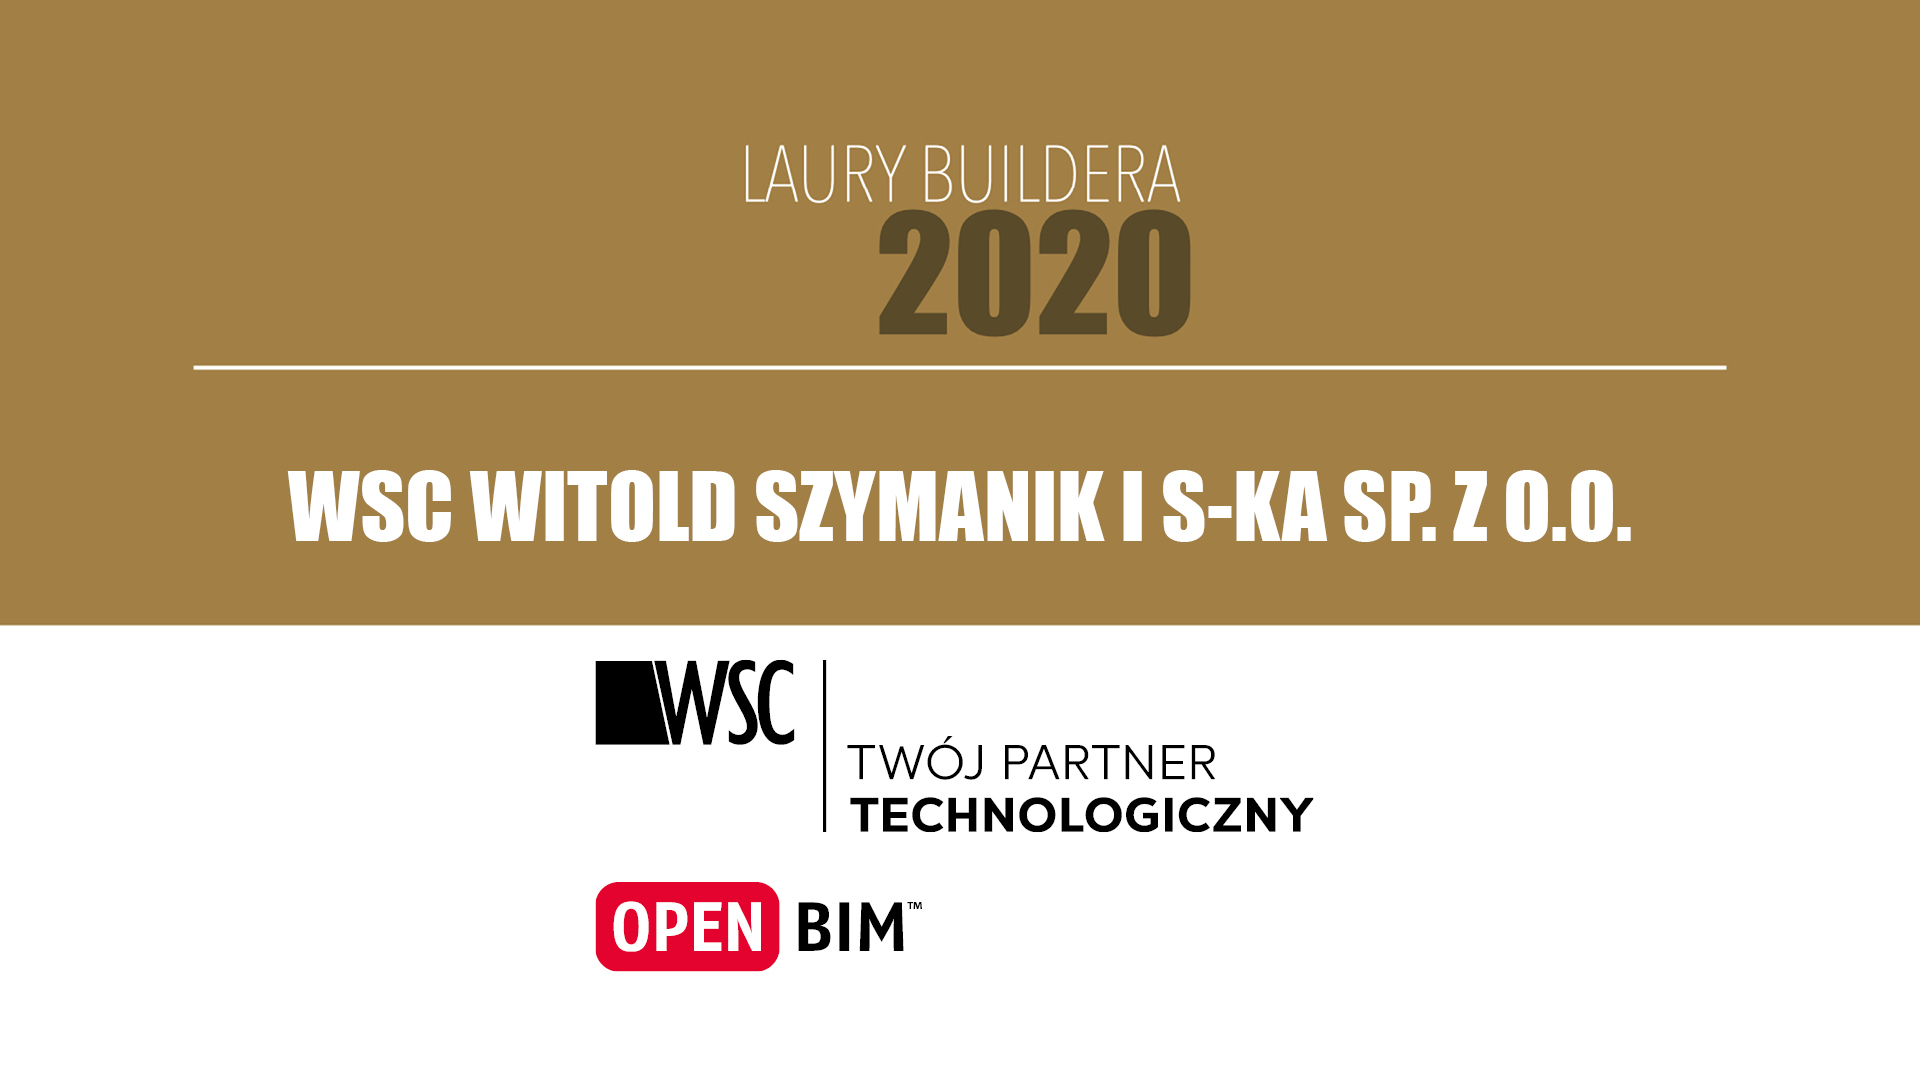 WSC Witold Szymanik i S-ka Sp. z o.o. – LAURY BUILDERA 2020